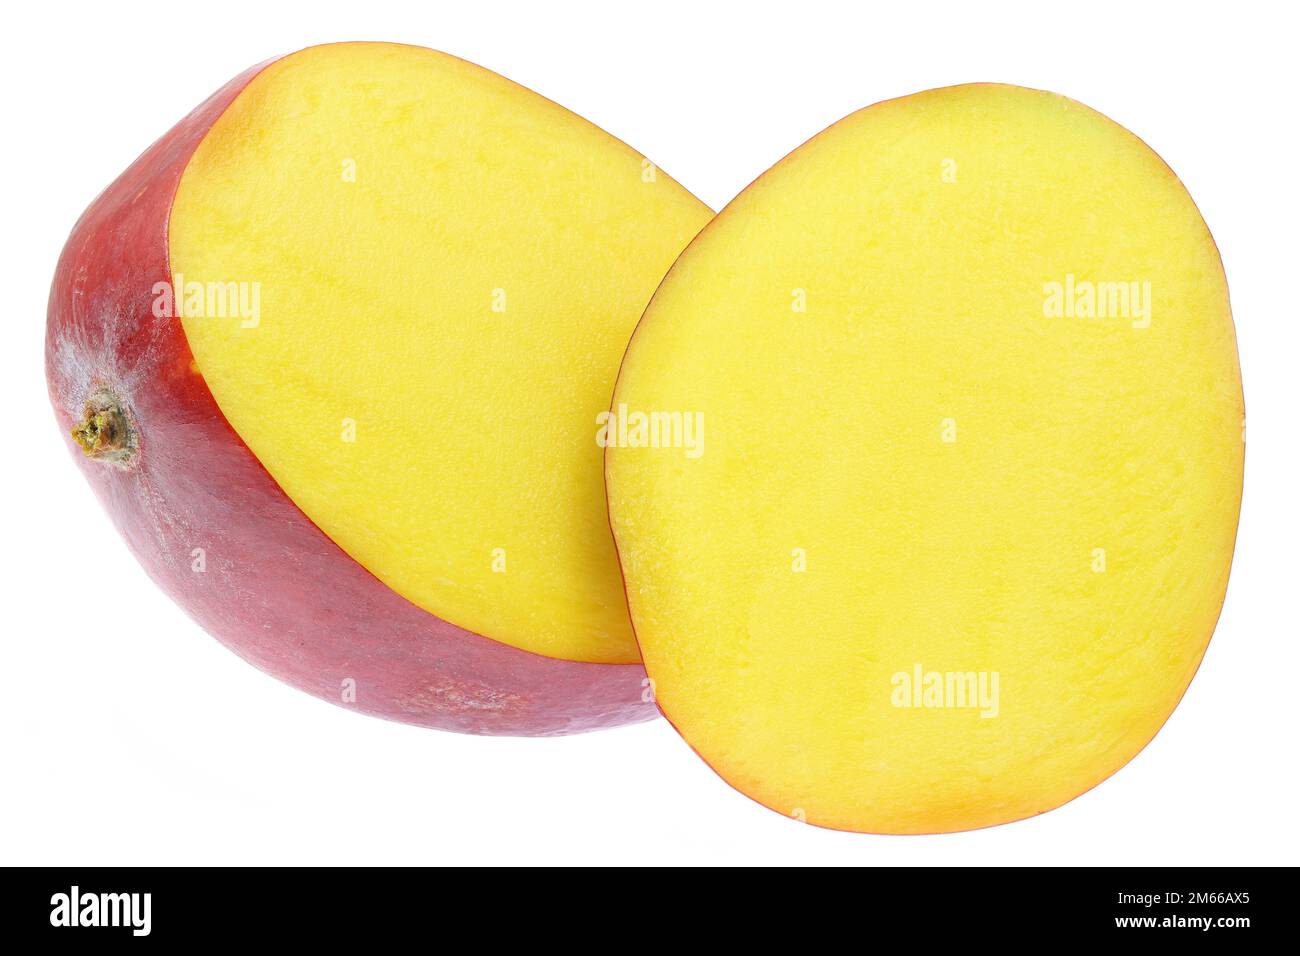 Tommy Atkins mango isolated on white background Stock Photo